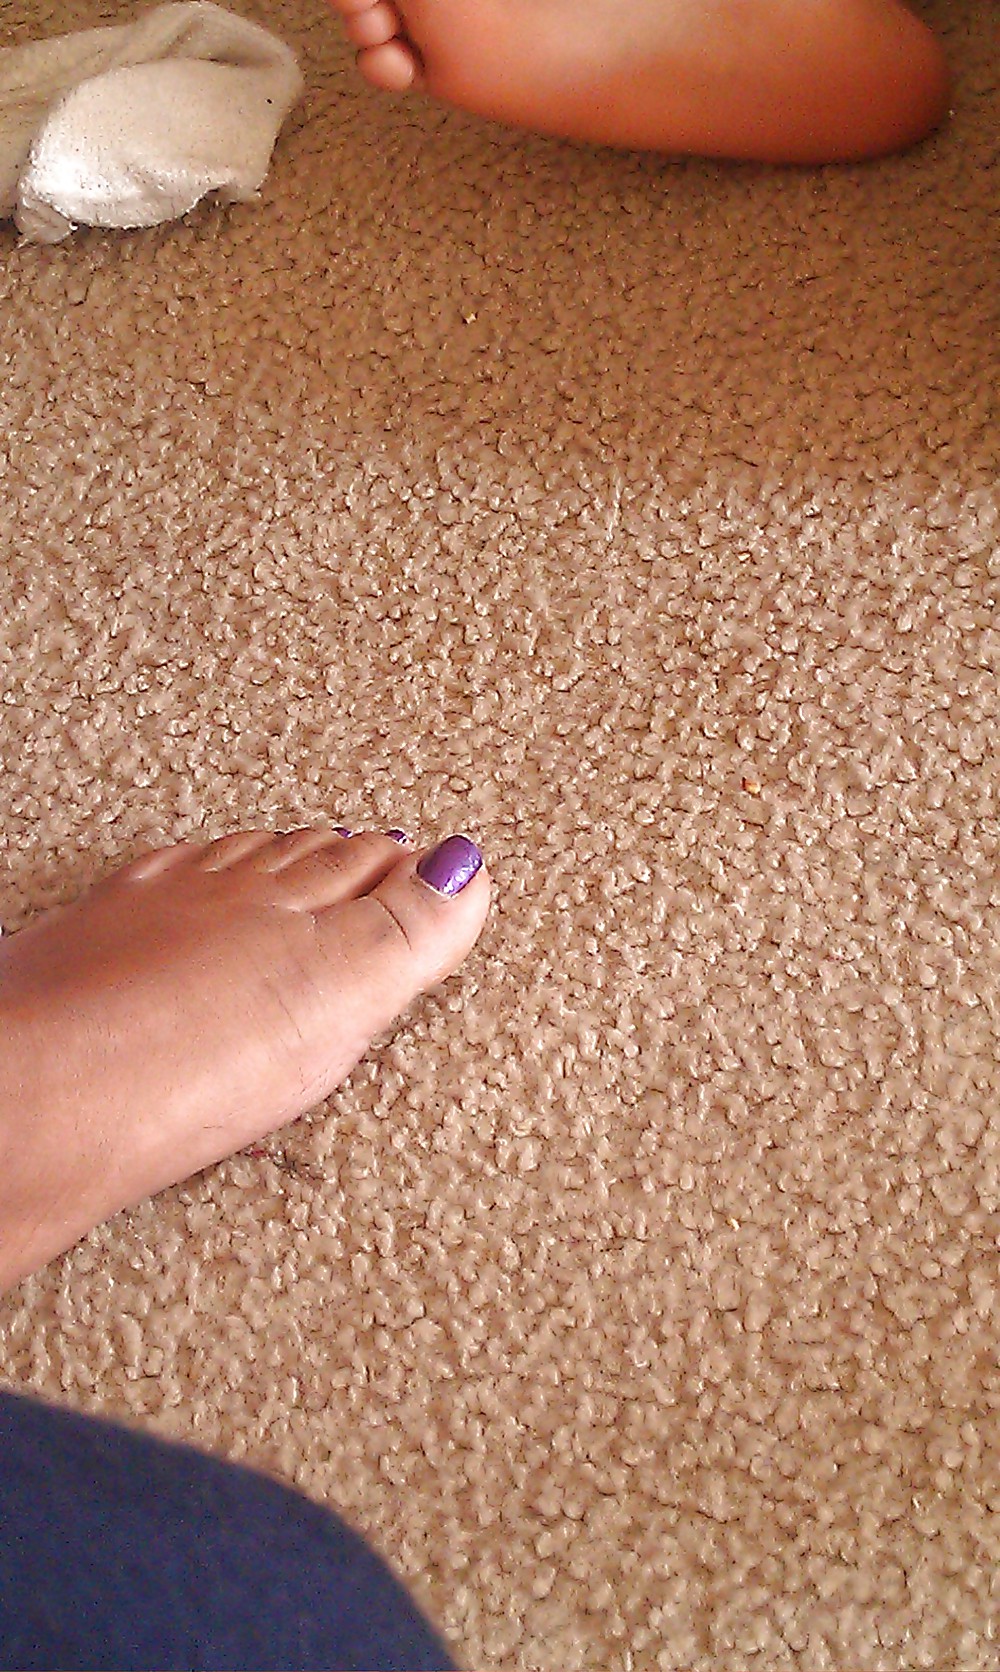 My wife cute feet & toes #4010333